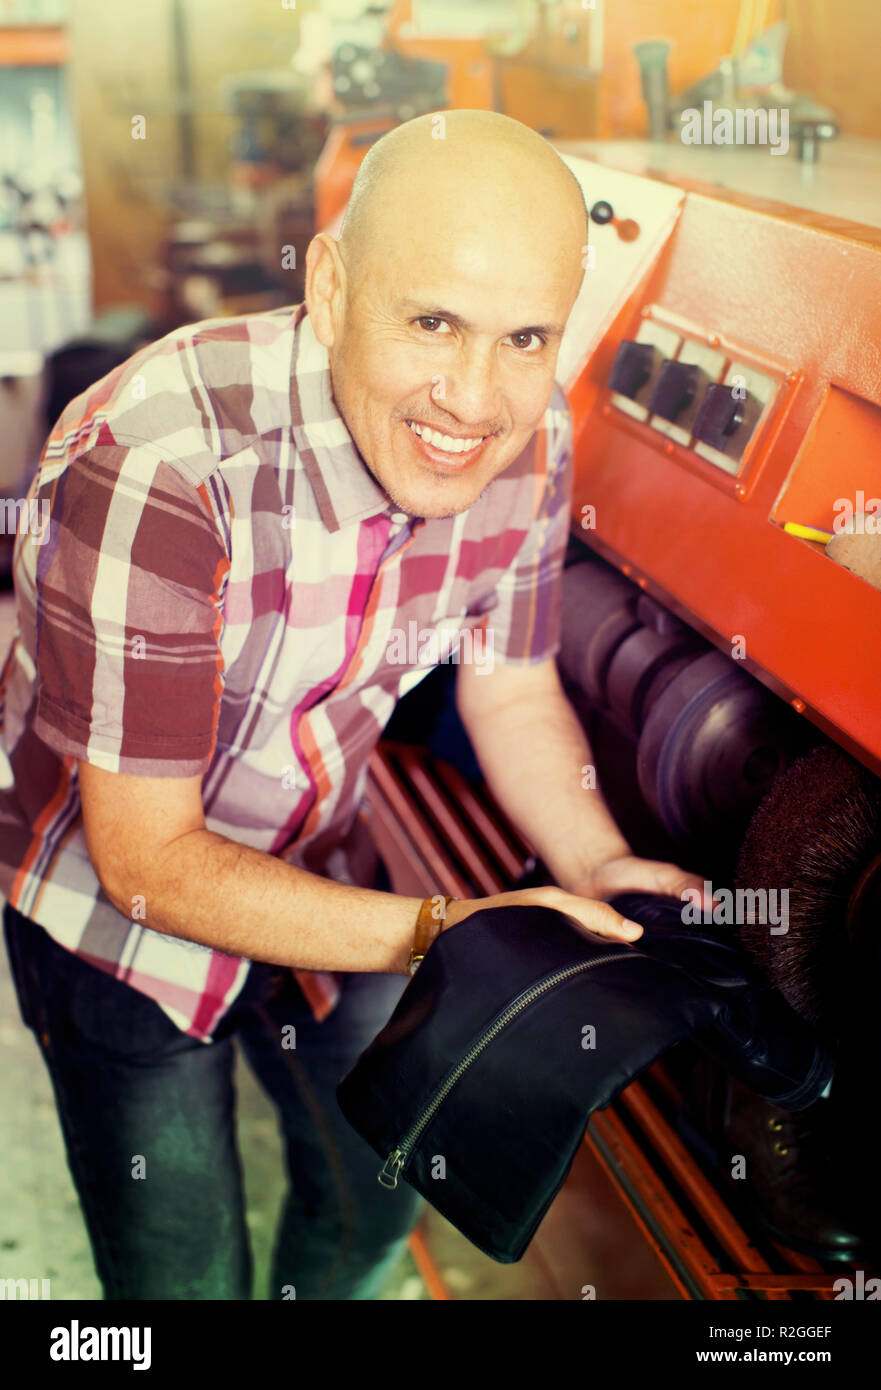 Profesional artesano eficiente calzado pulido en la máquina en el atelier de zapata Foto de stock